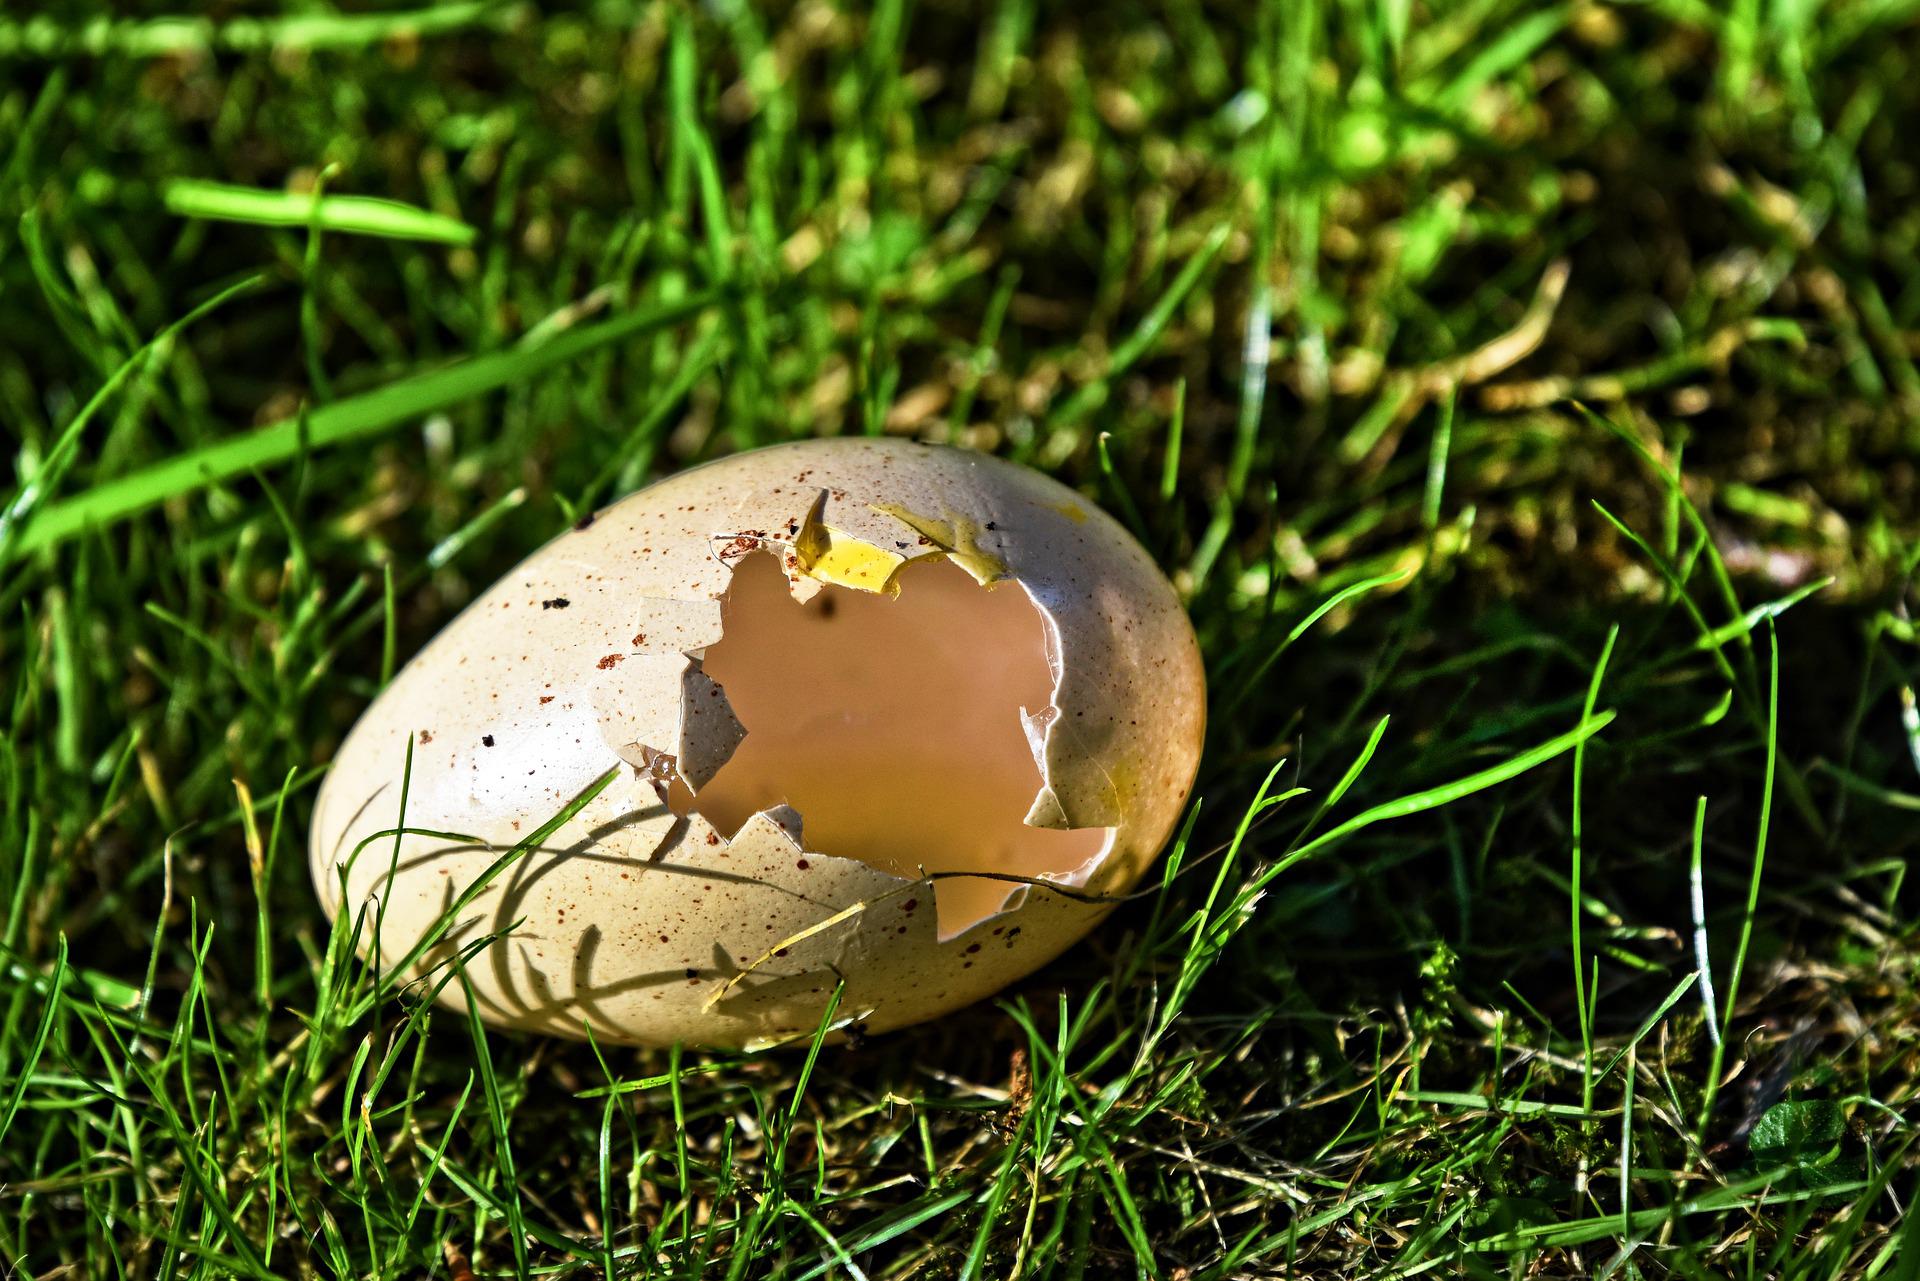 Skořápka vajíčka